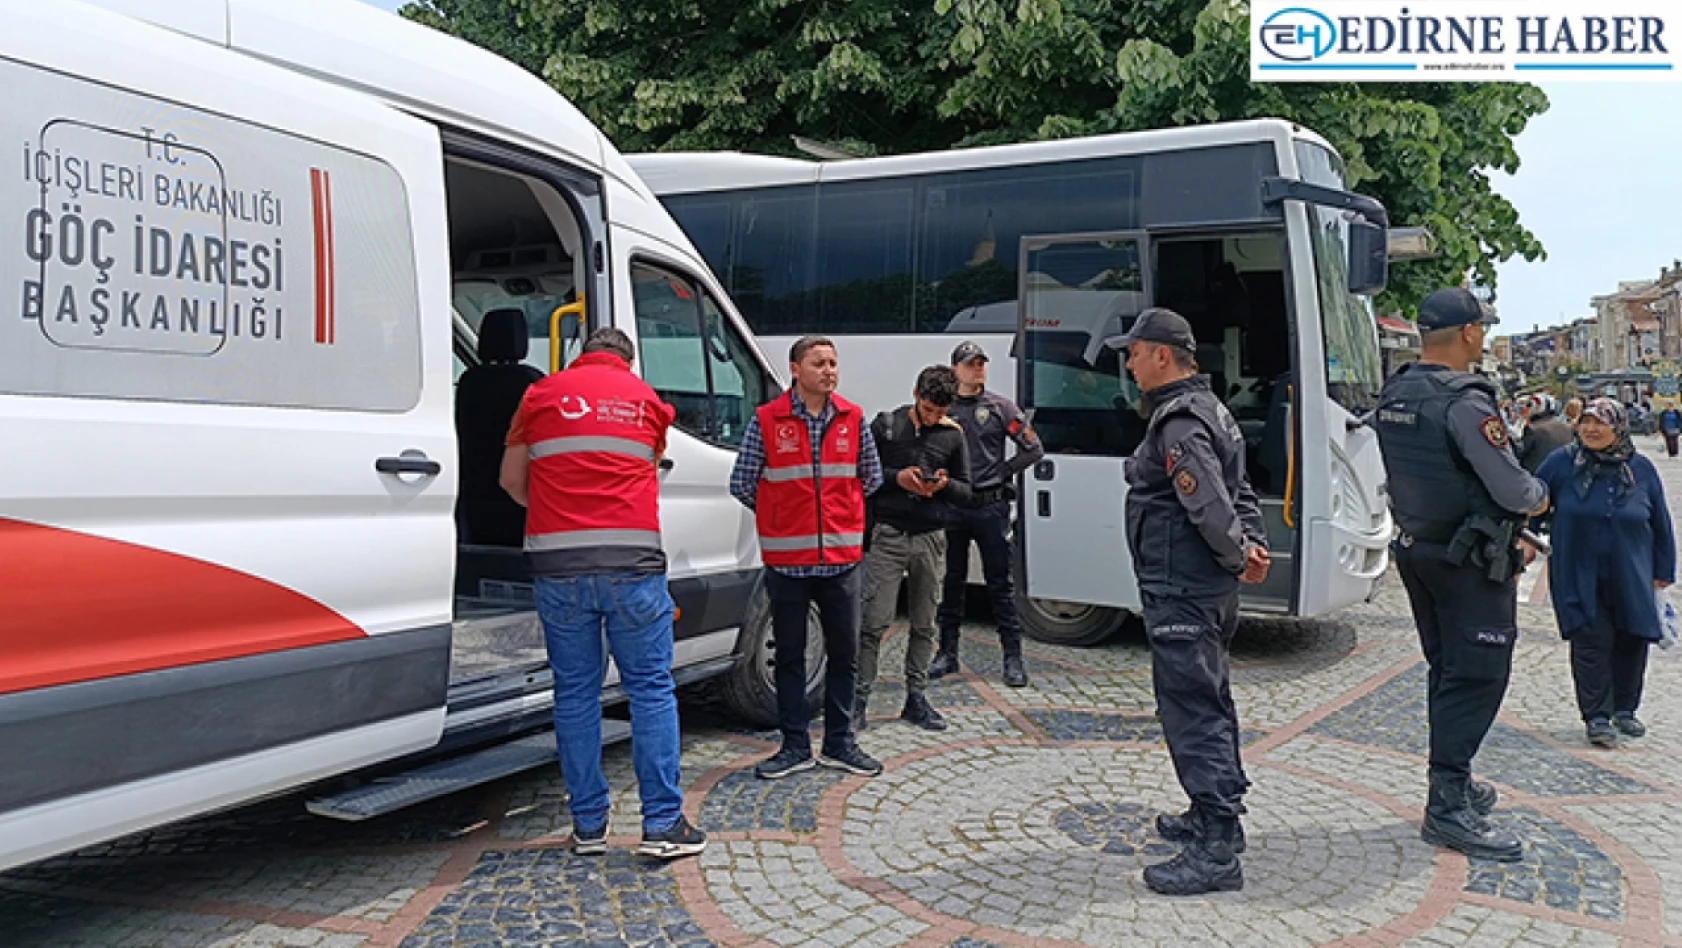 Edirne'de Mobil Göç Noktası Aracı Hizmete Başladı